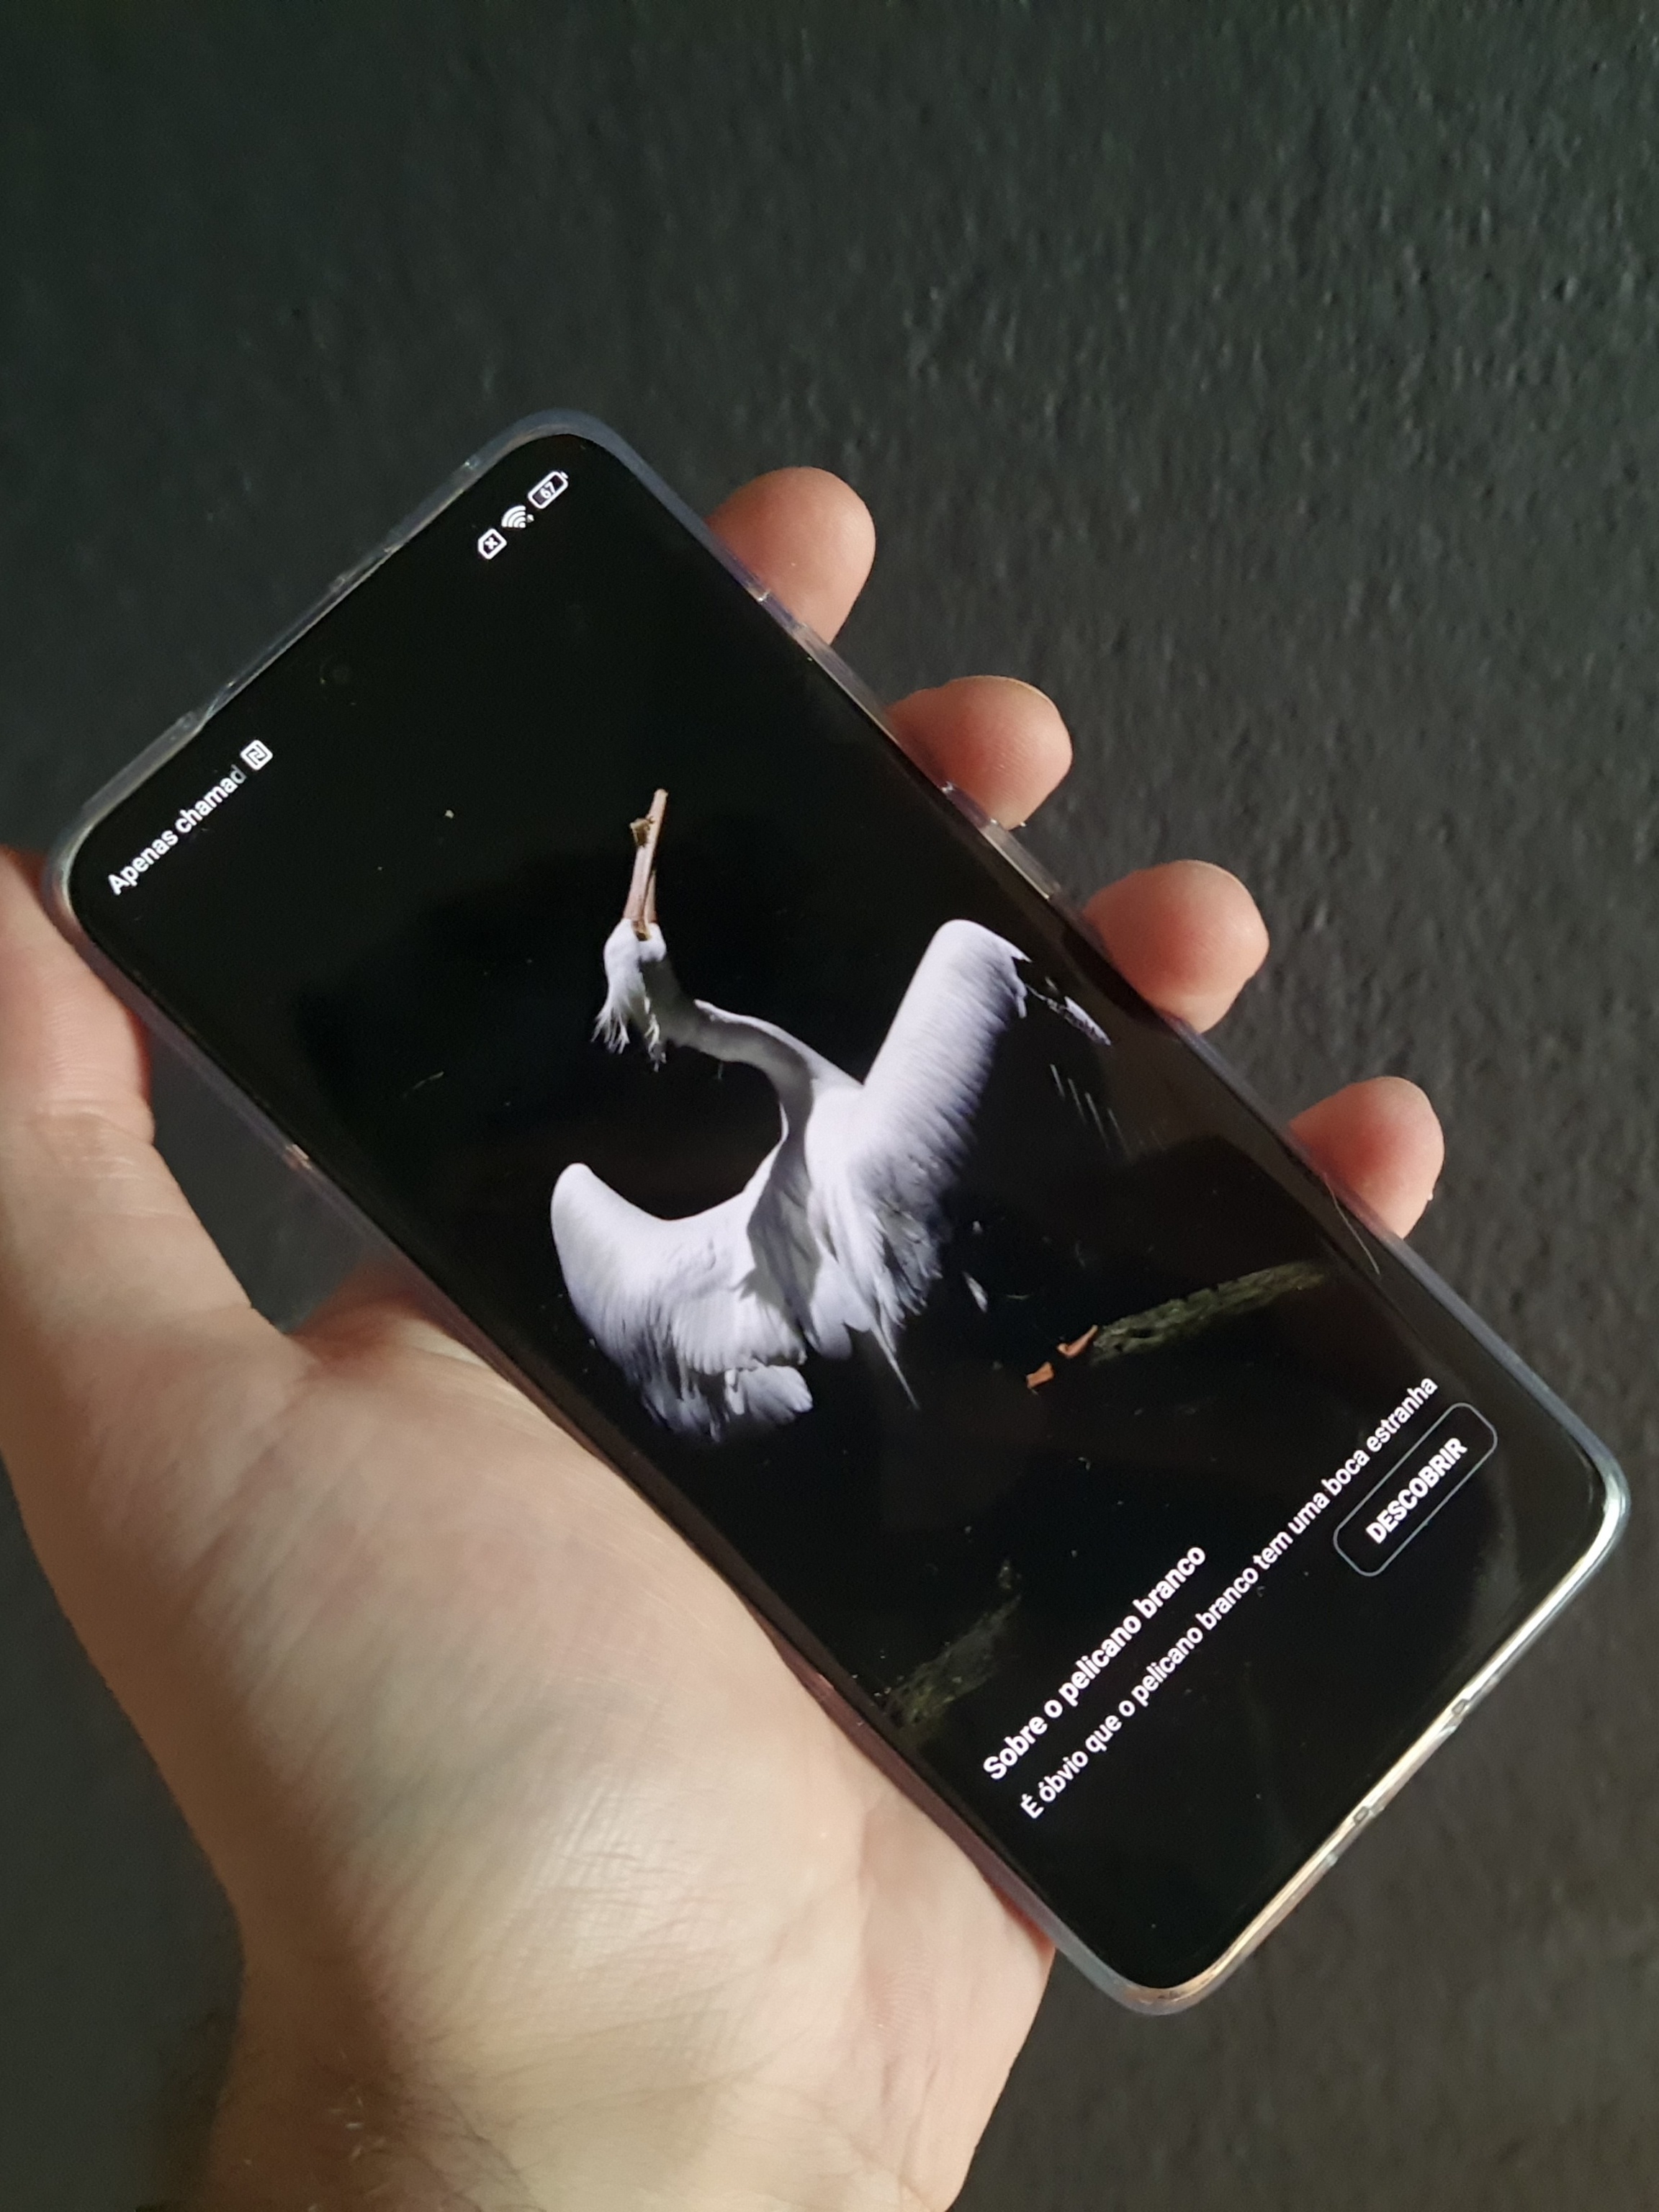 Comparativa del Moto G9 Plus frente al Xiaomi Mi Note 10 Lite